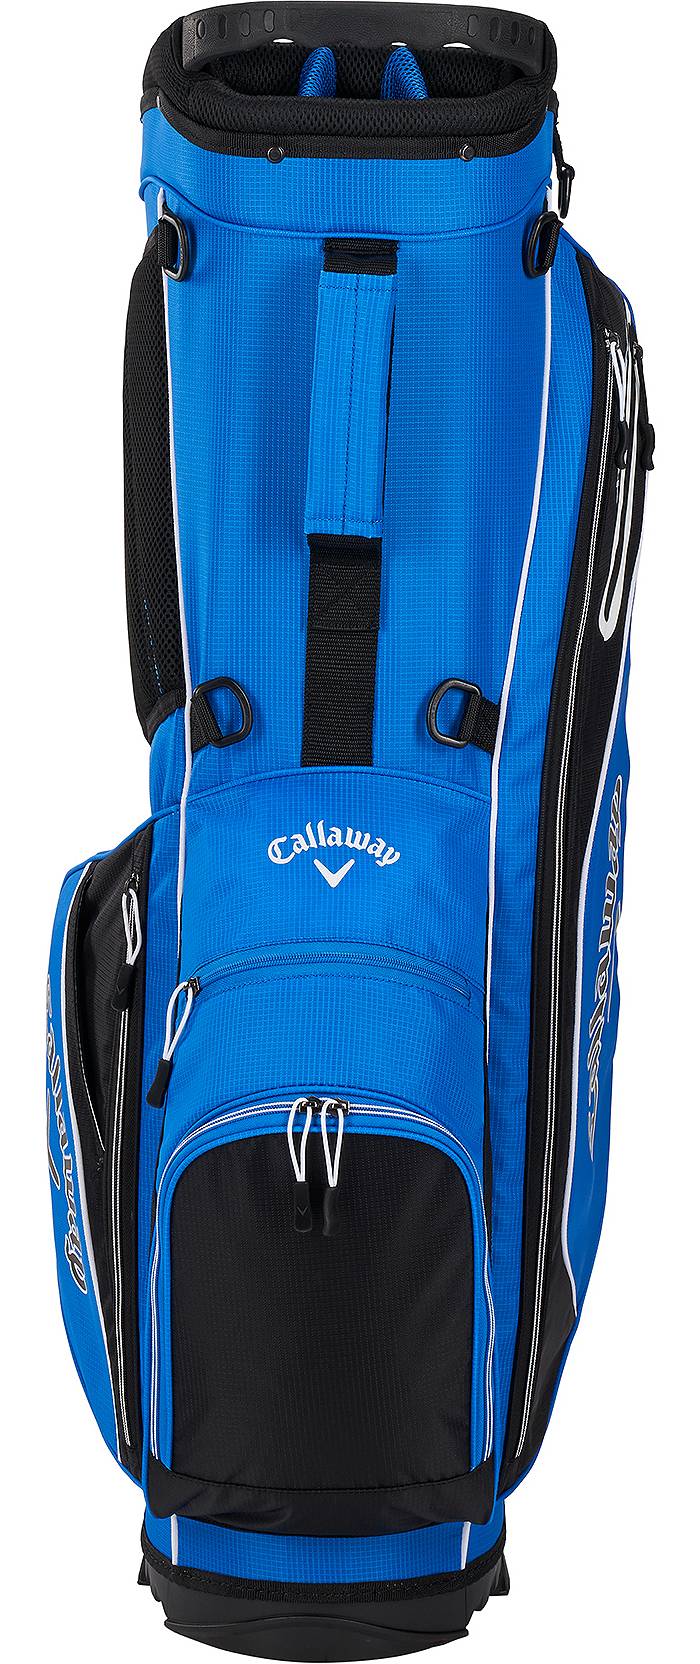 Callaway X-Series Cart Bag, Men's, Royal Blue/Black